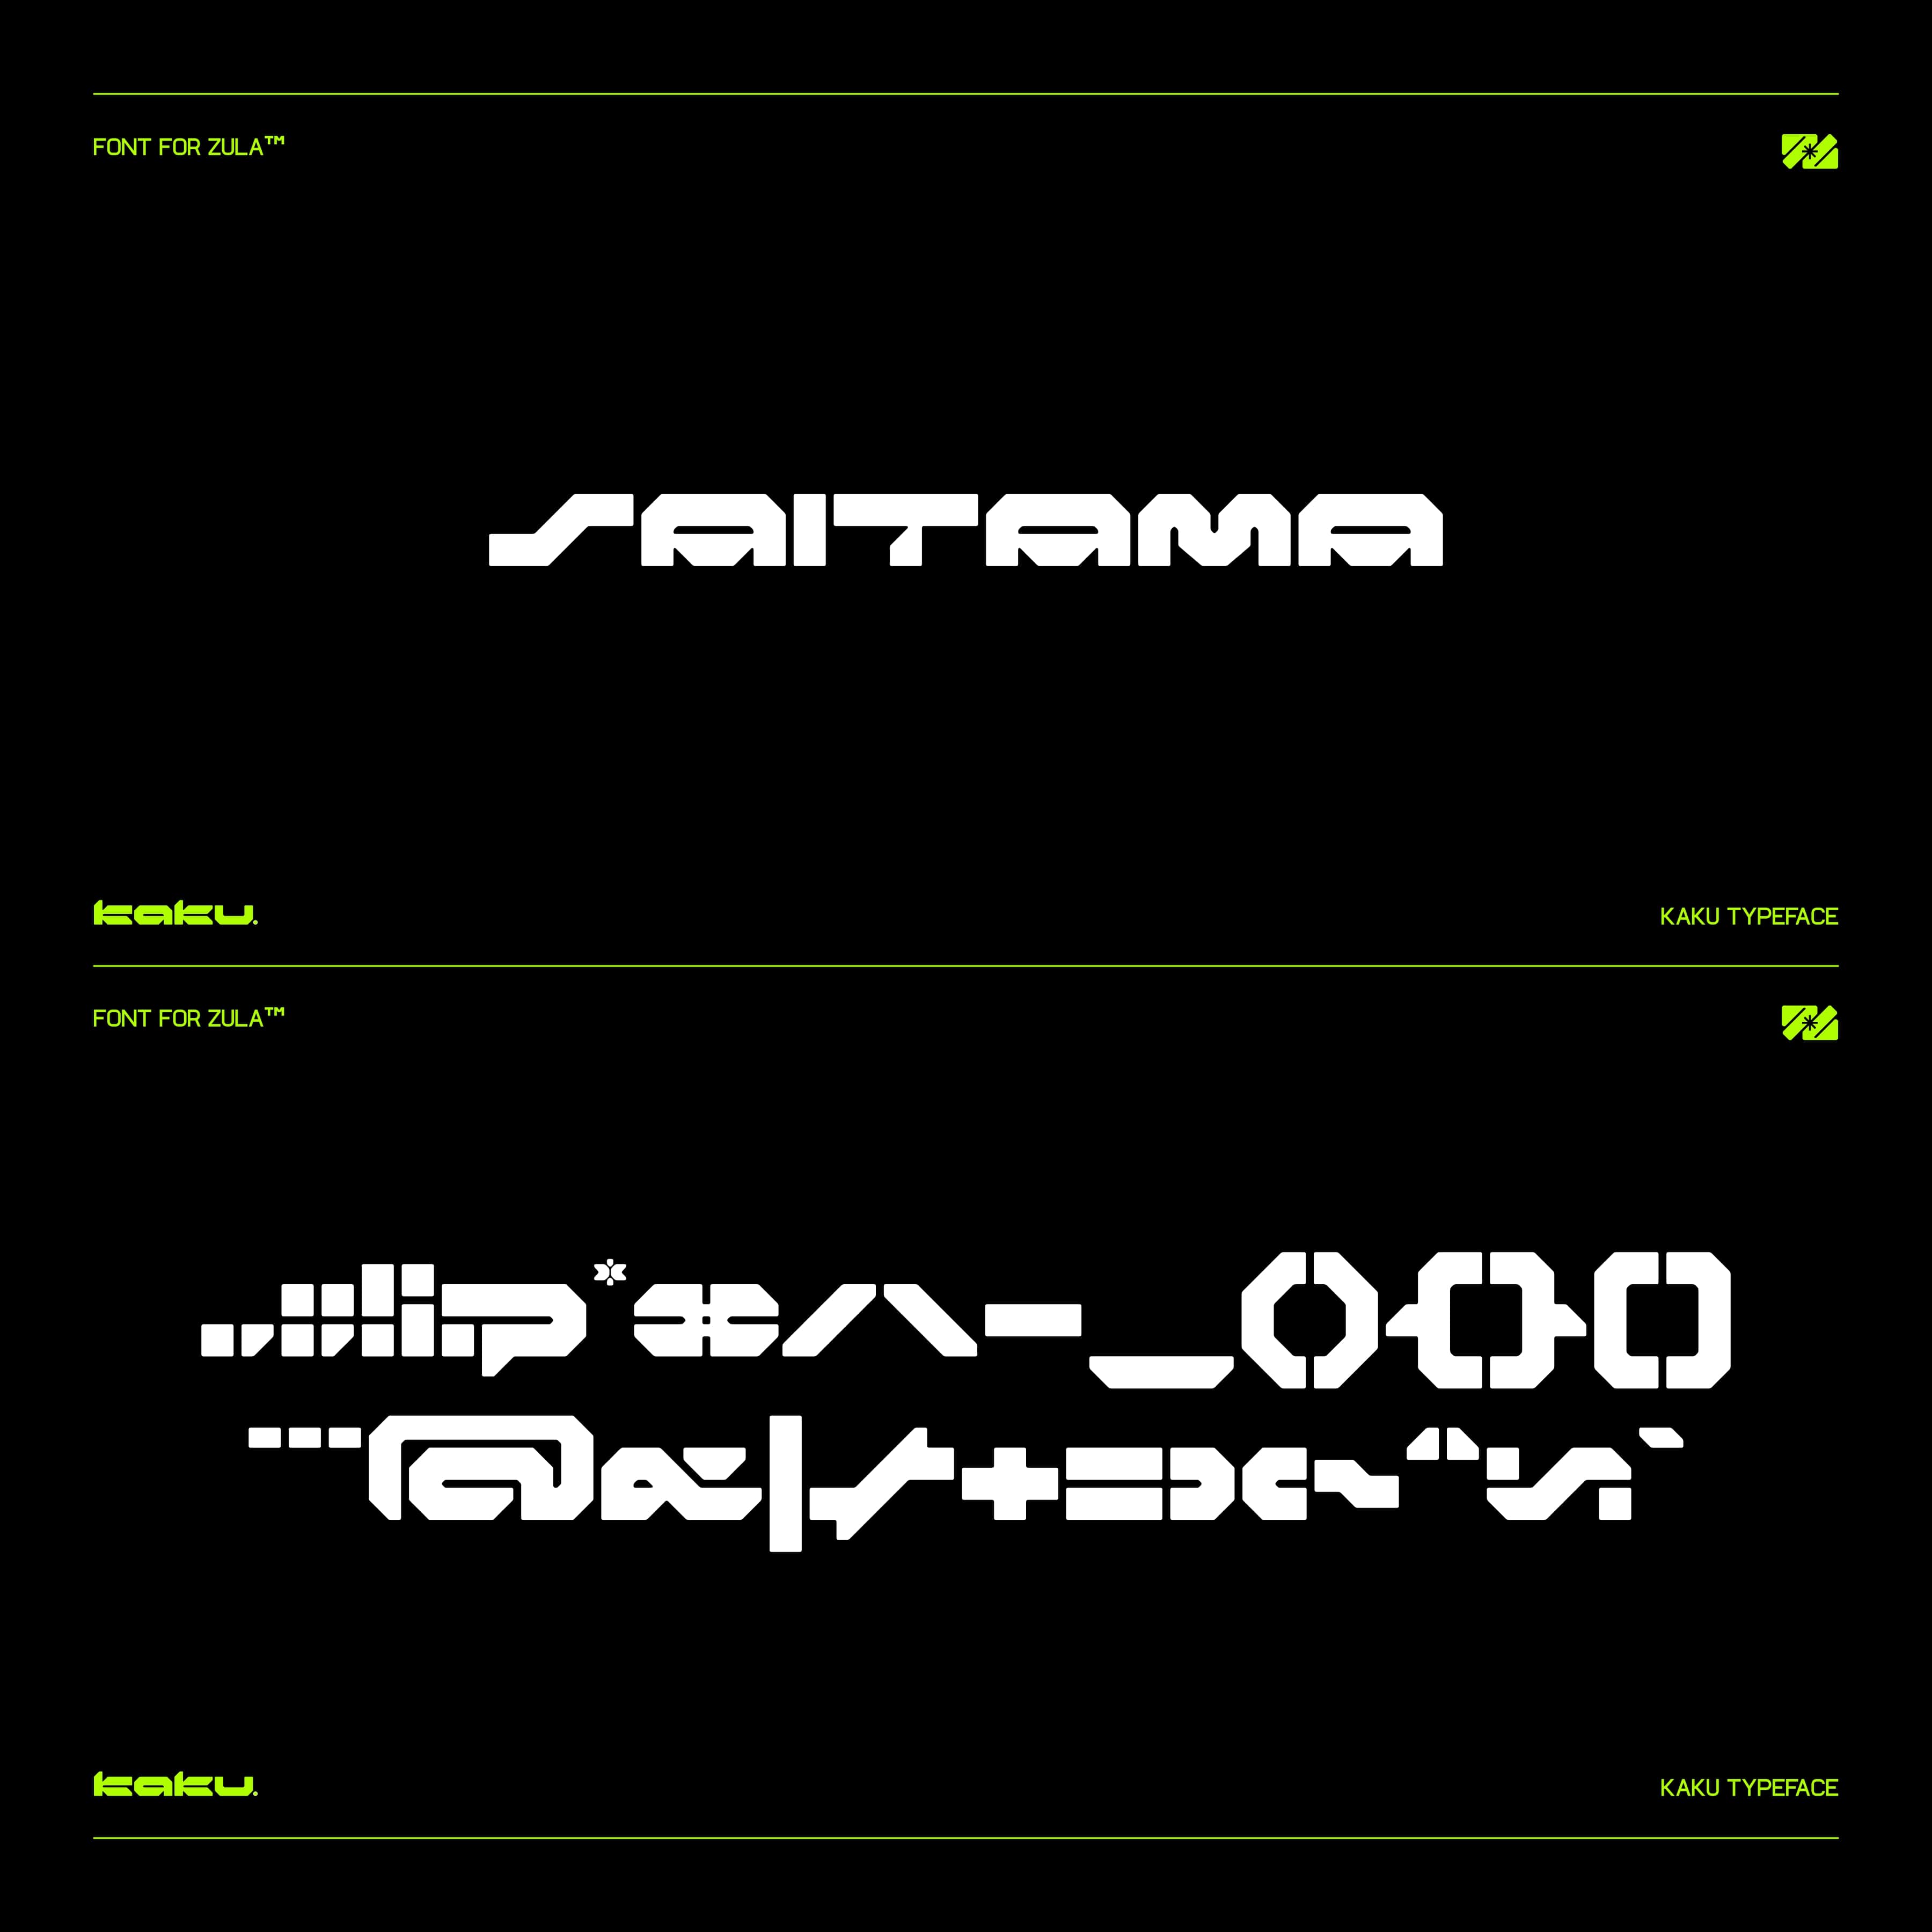 KAKU Typeface